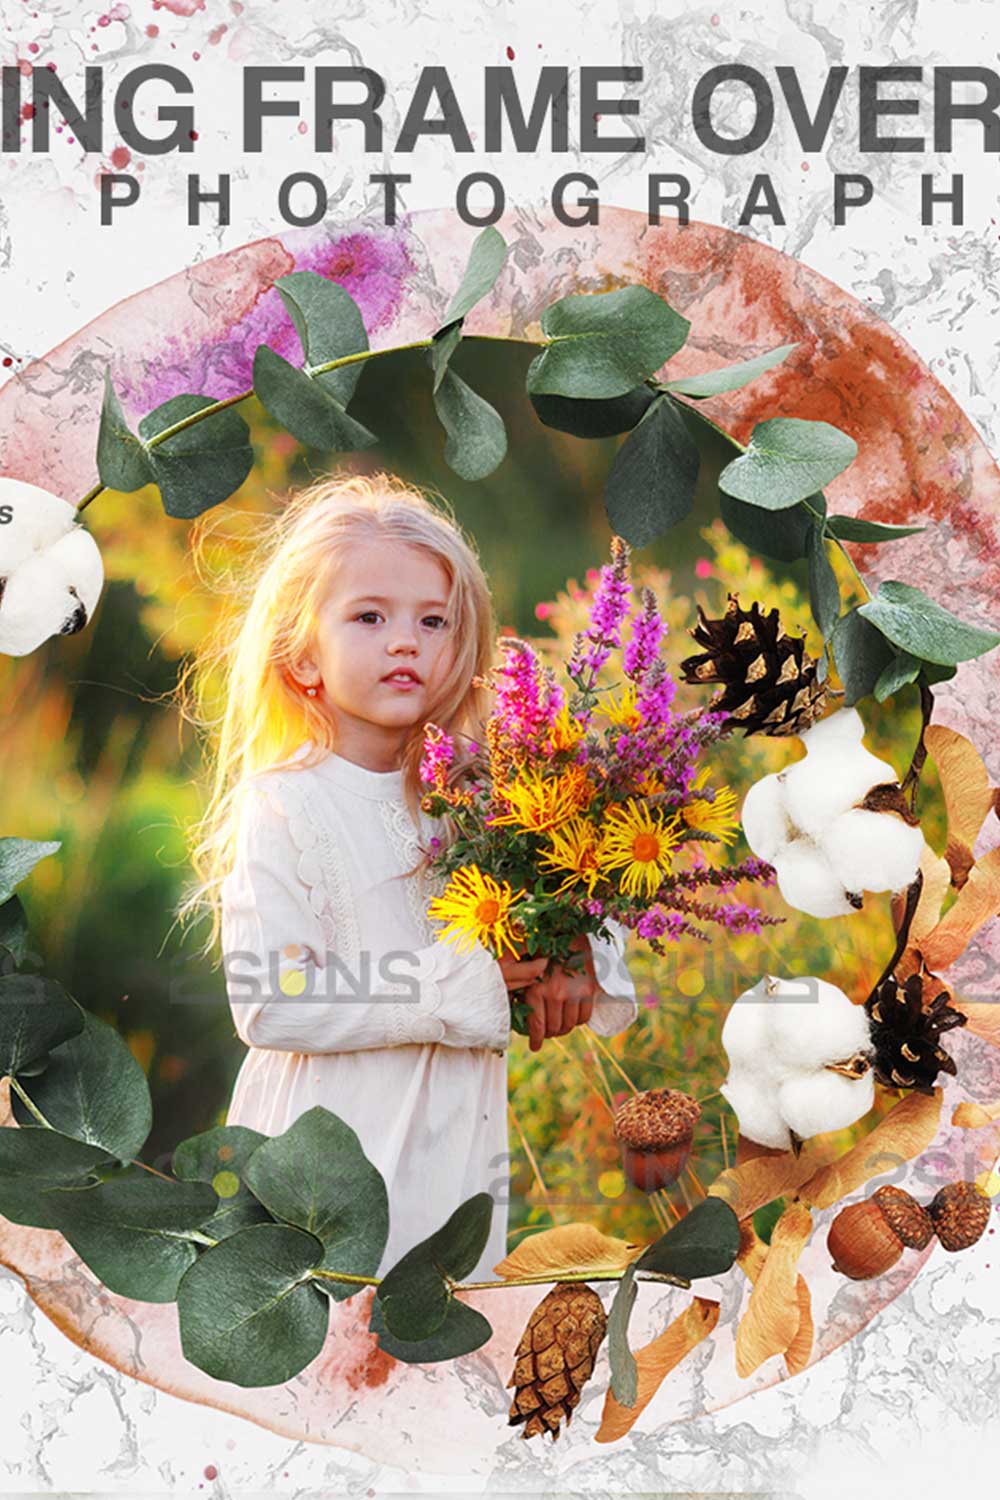 Easter Spring Flower Digital Frames Overlay Pinterest Image.